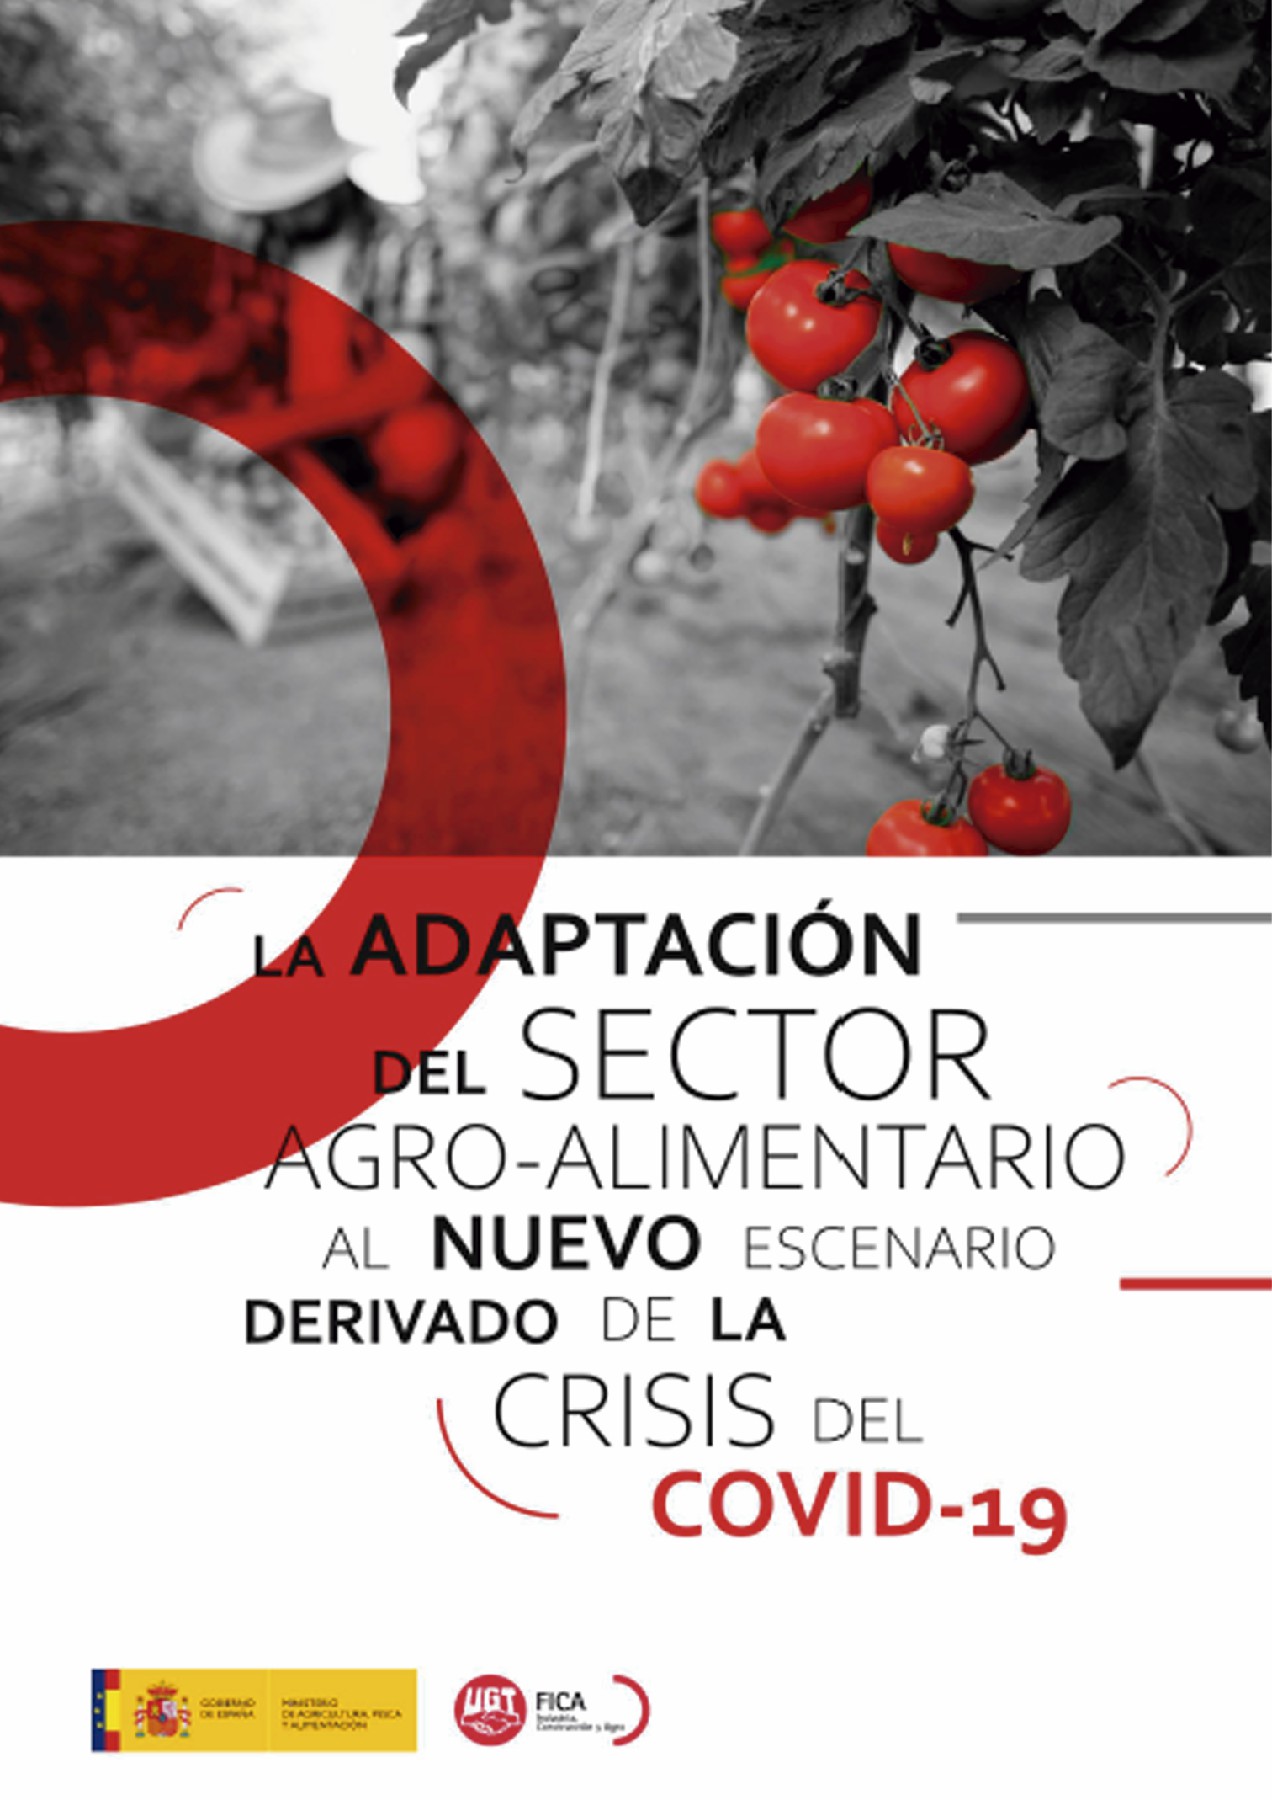 La Adaptación del Sector Agro-alimentario al nuevo escenario derivado de la crisis del Covid-19